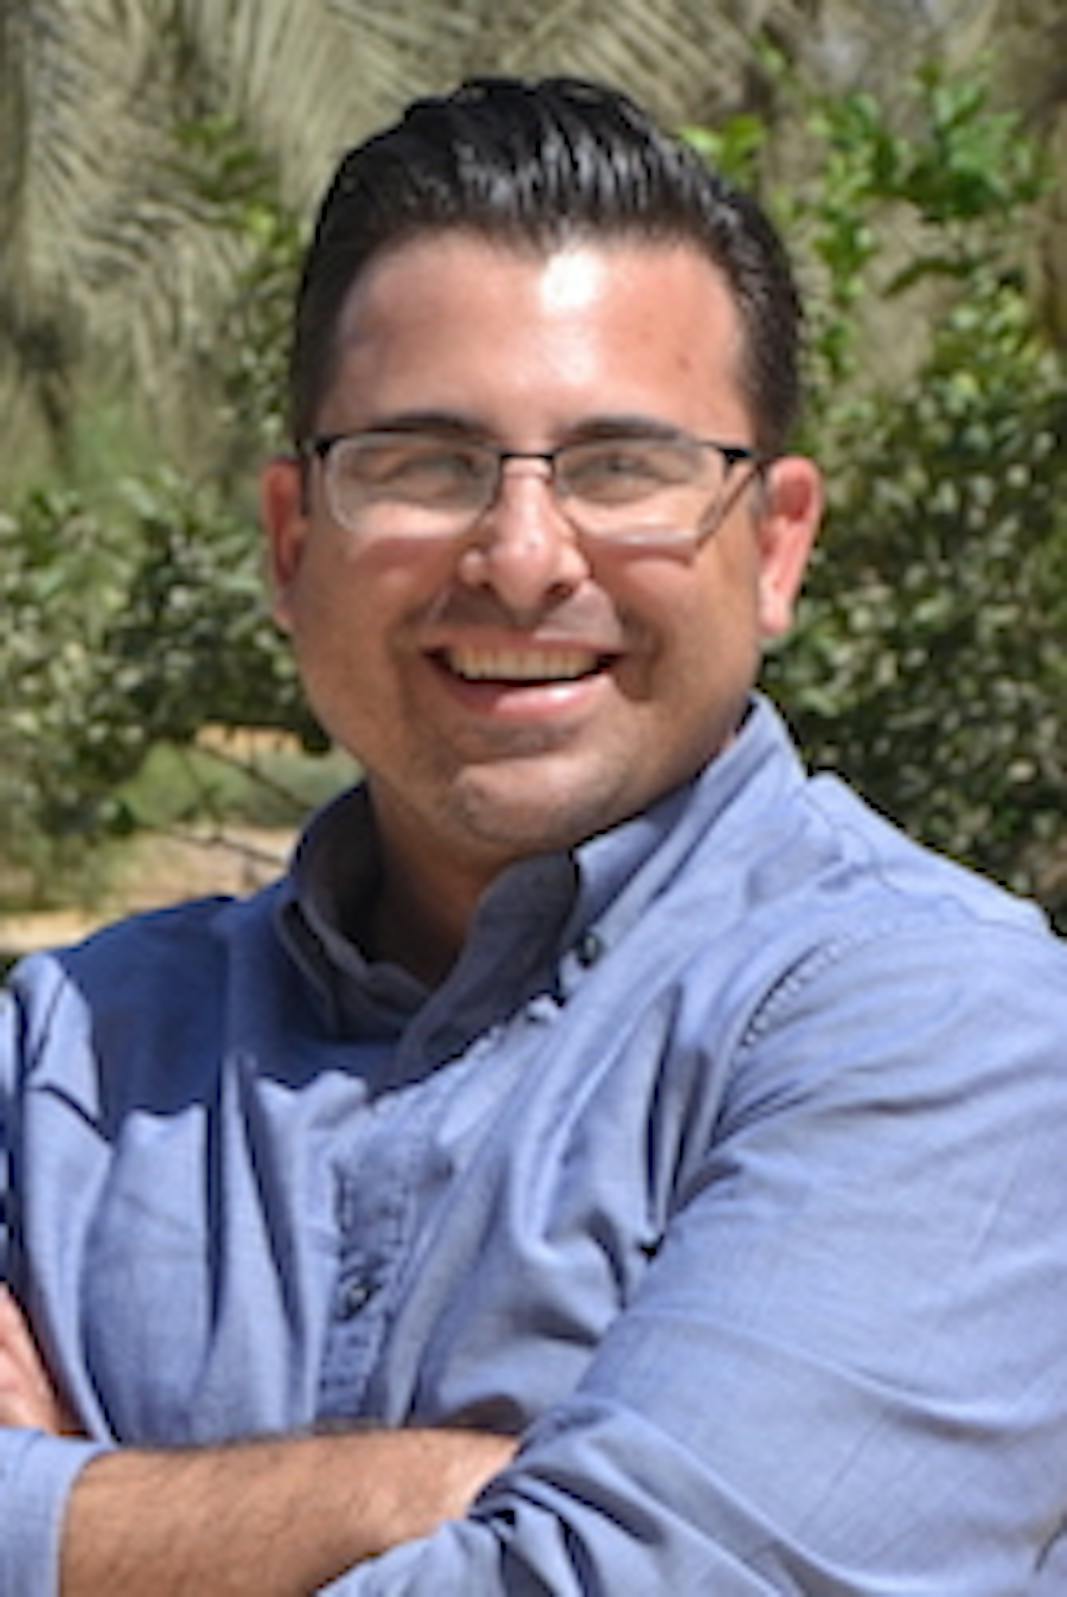 Education lecturer Jason Dorio